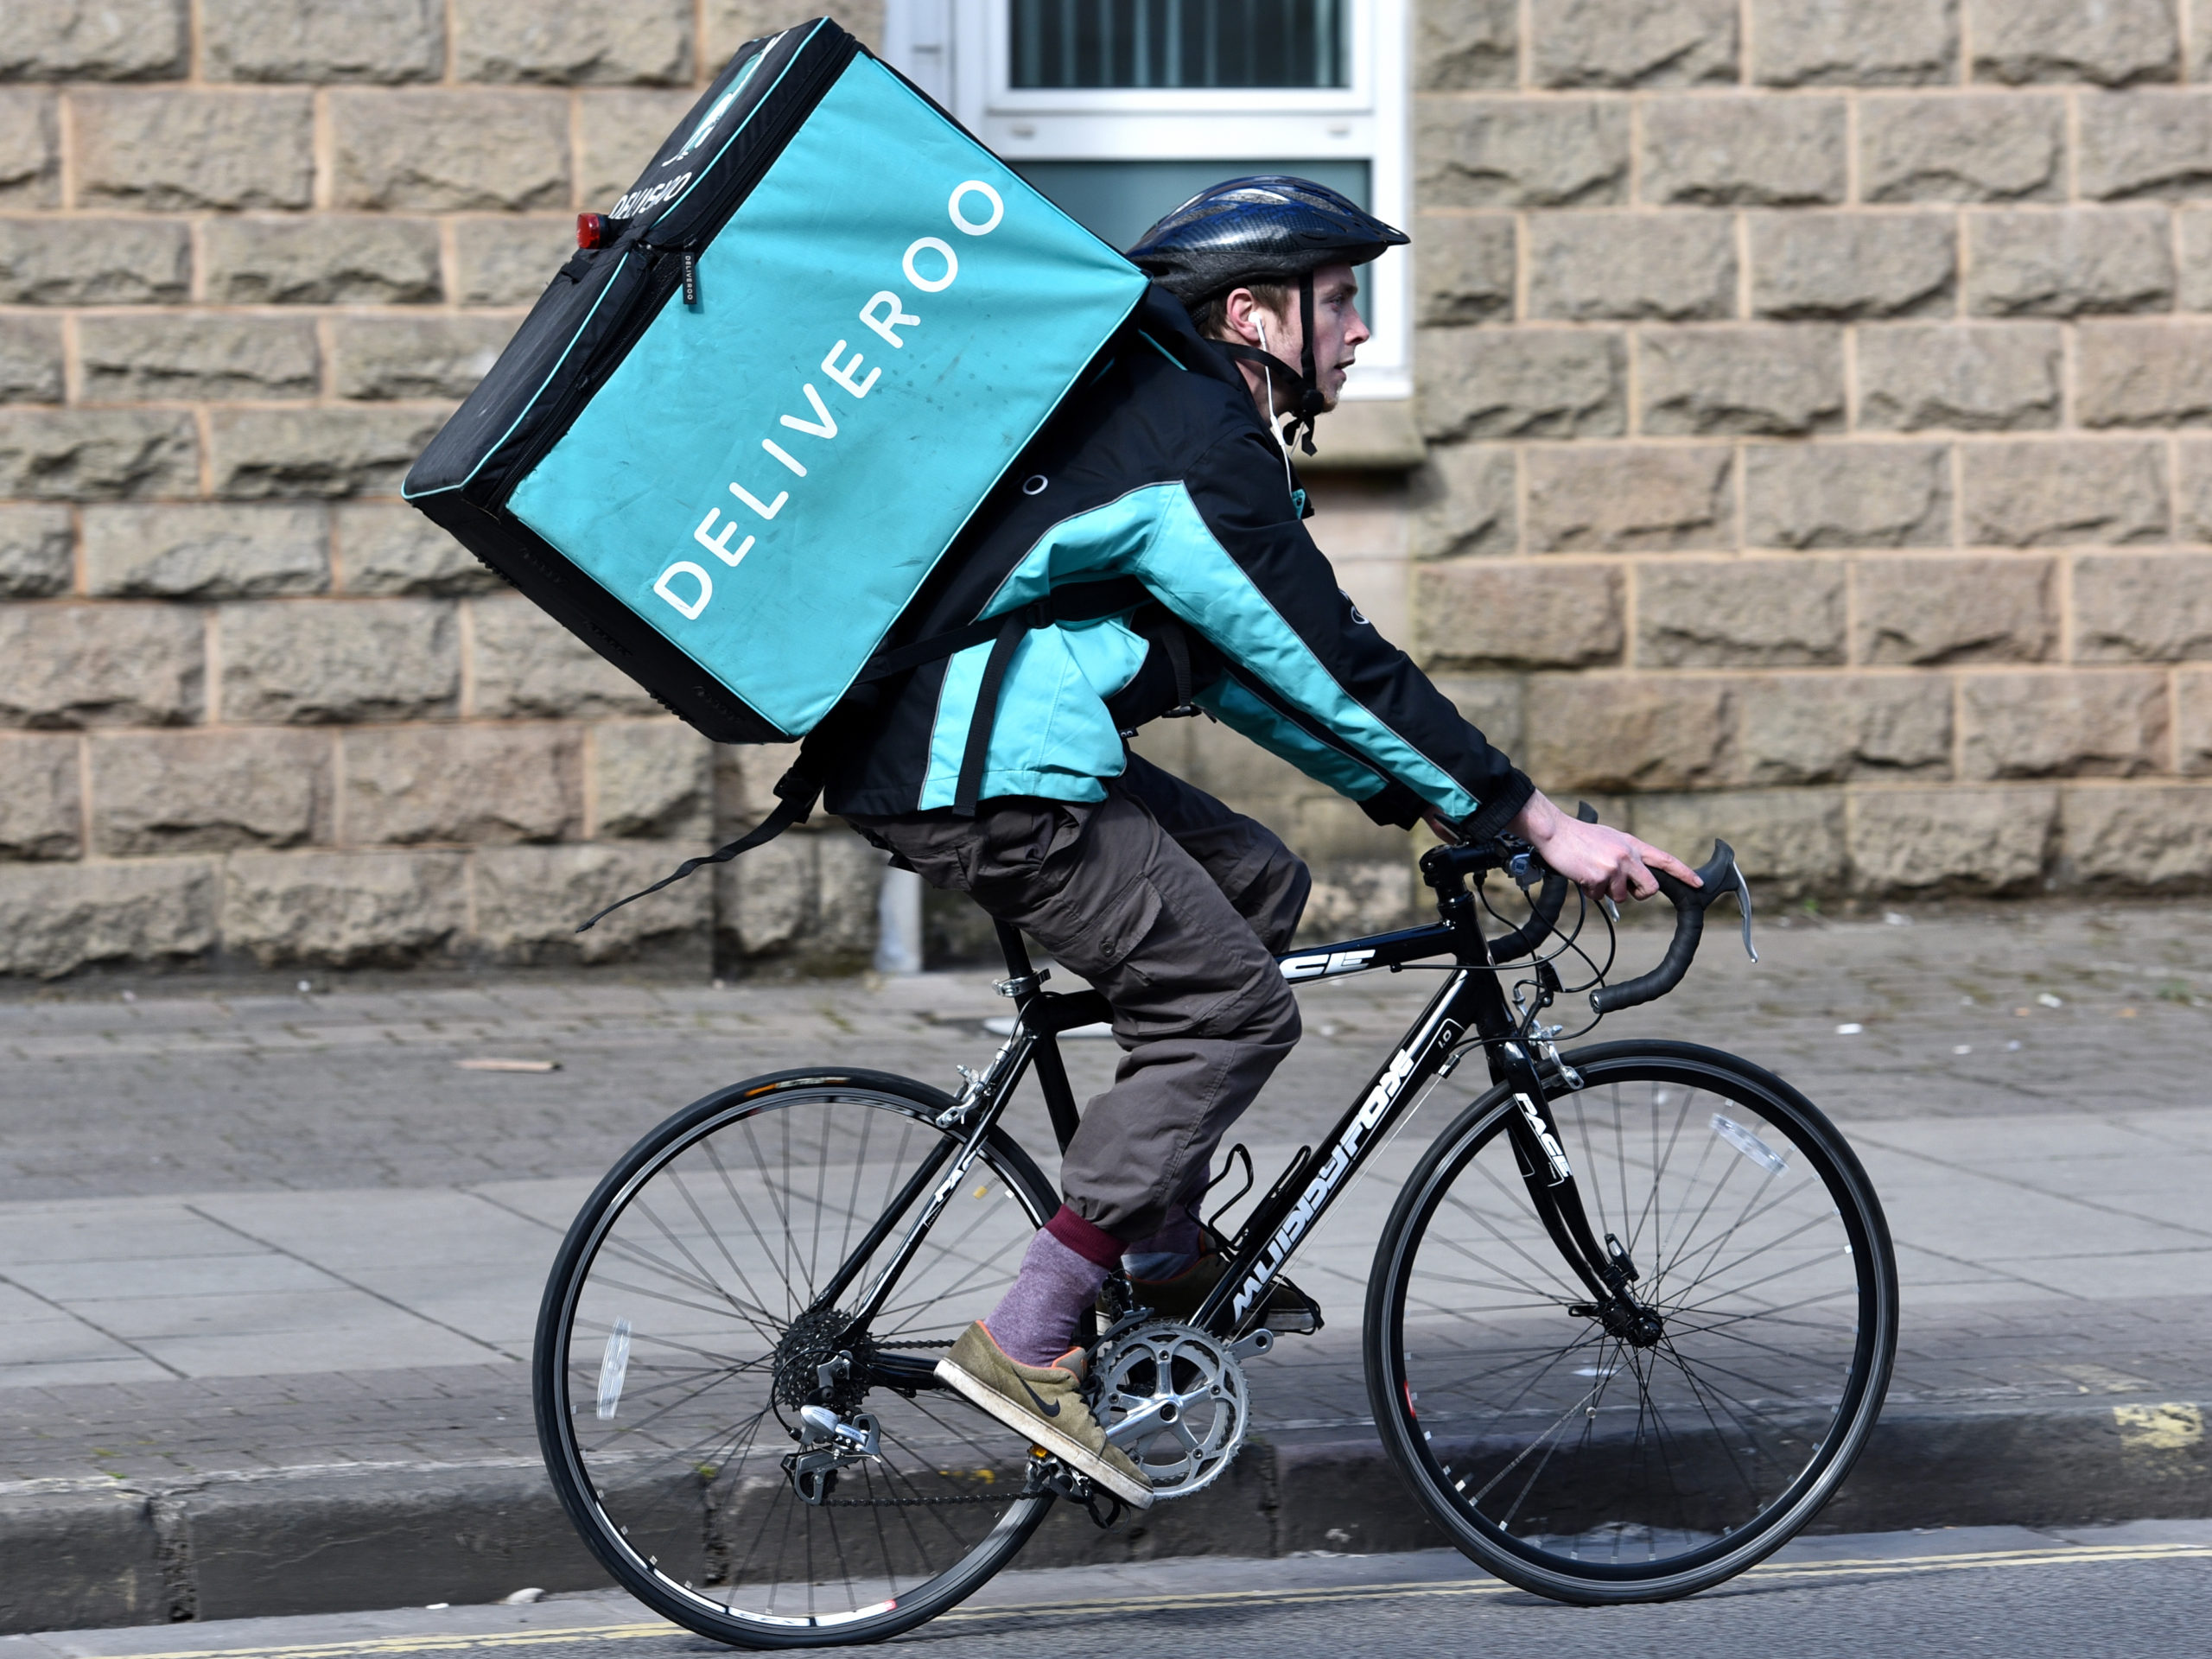 Deliveroo delivery bike